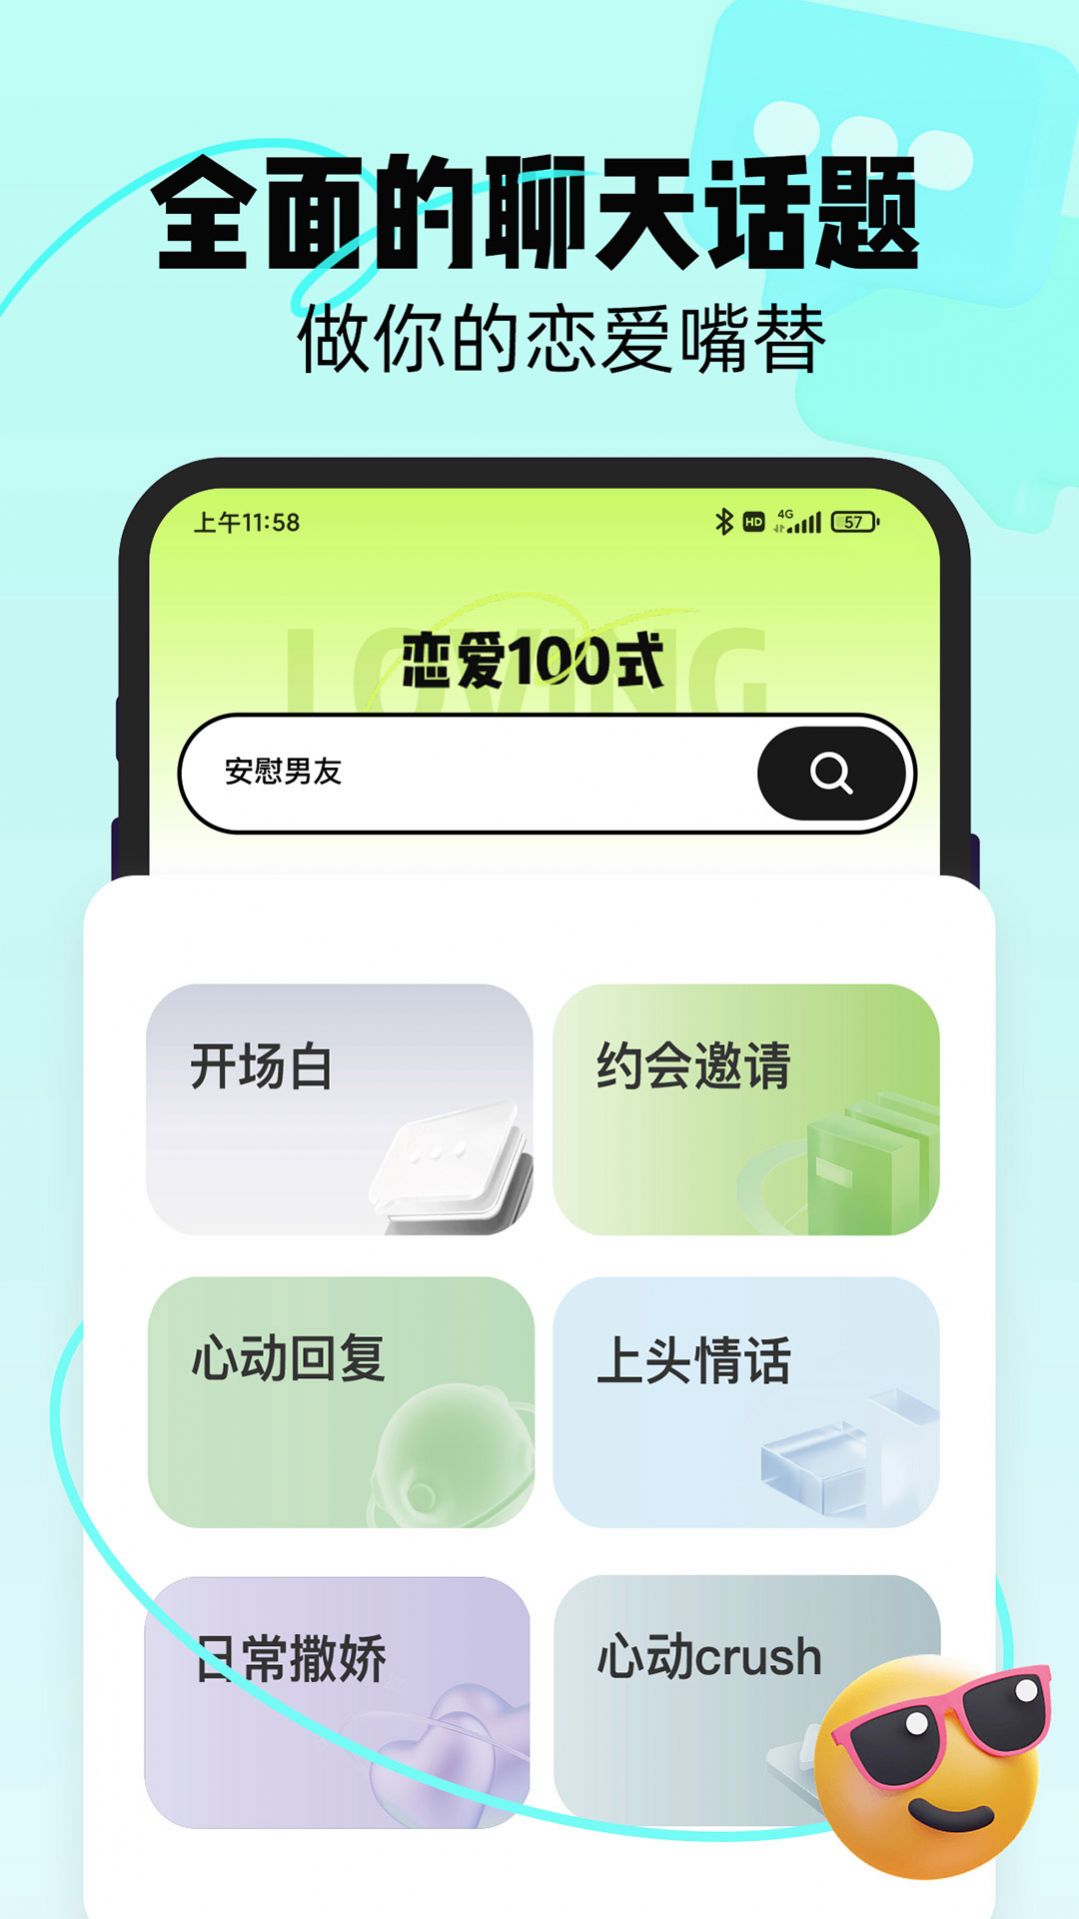 恋知道交友软件app图片3